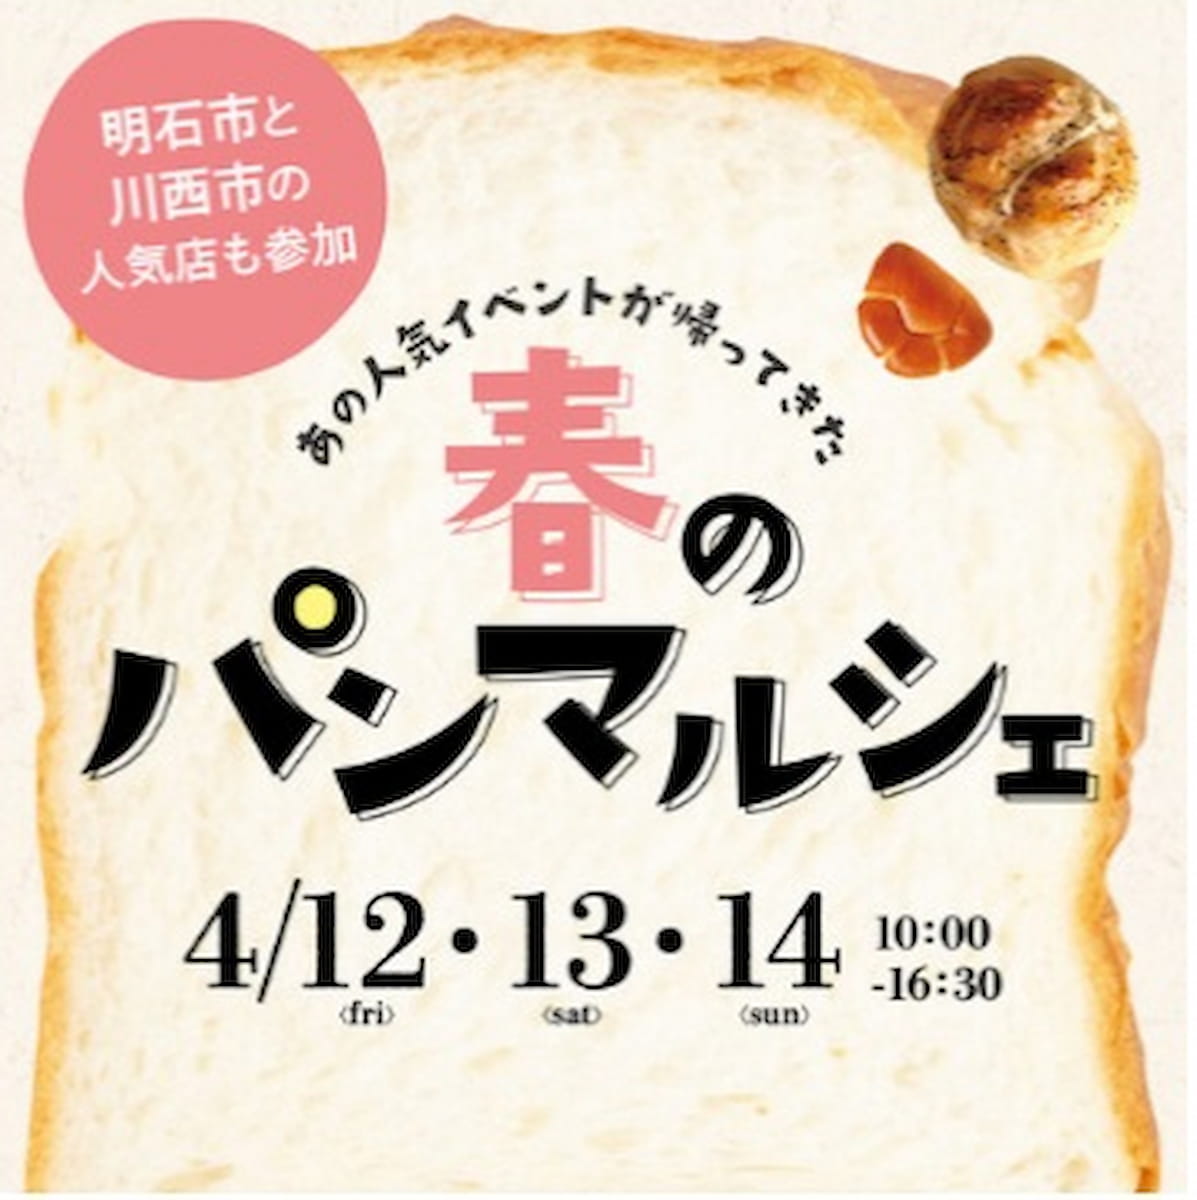 イオンモール神戸北で『春のパンマルシェ』を開催　神戸市 [画像]